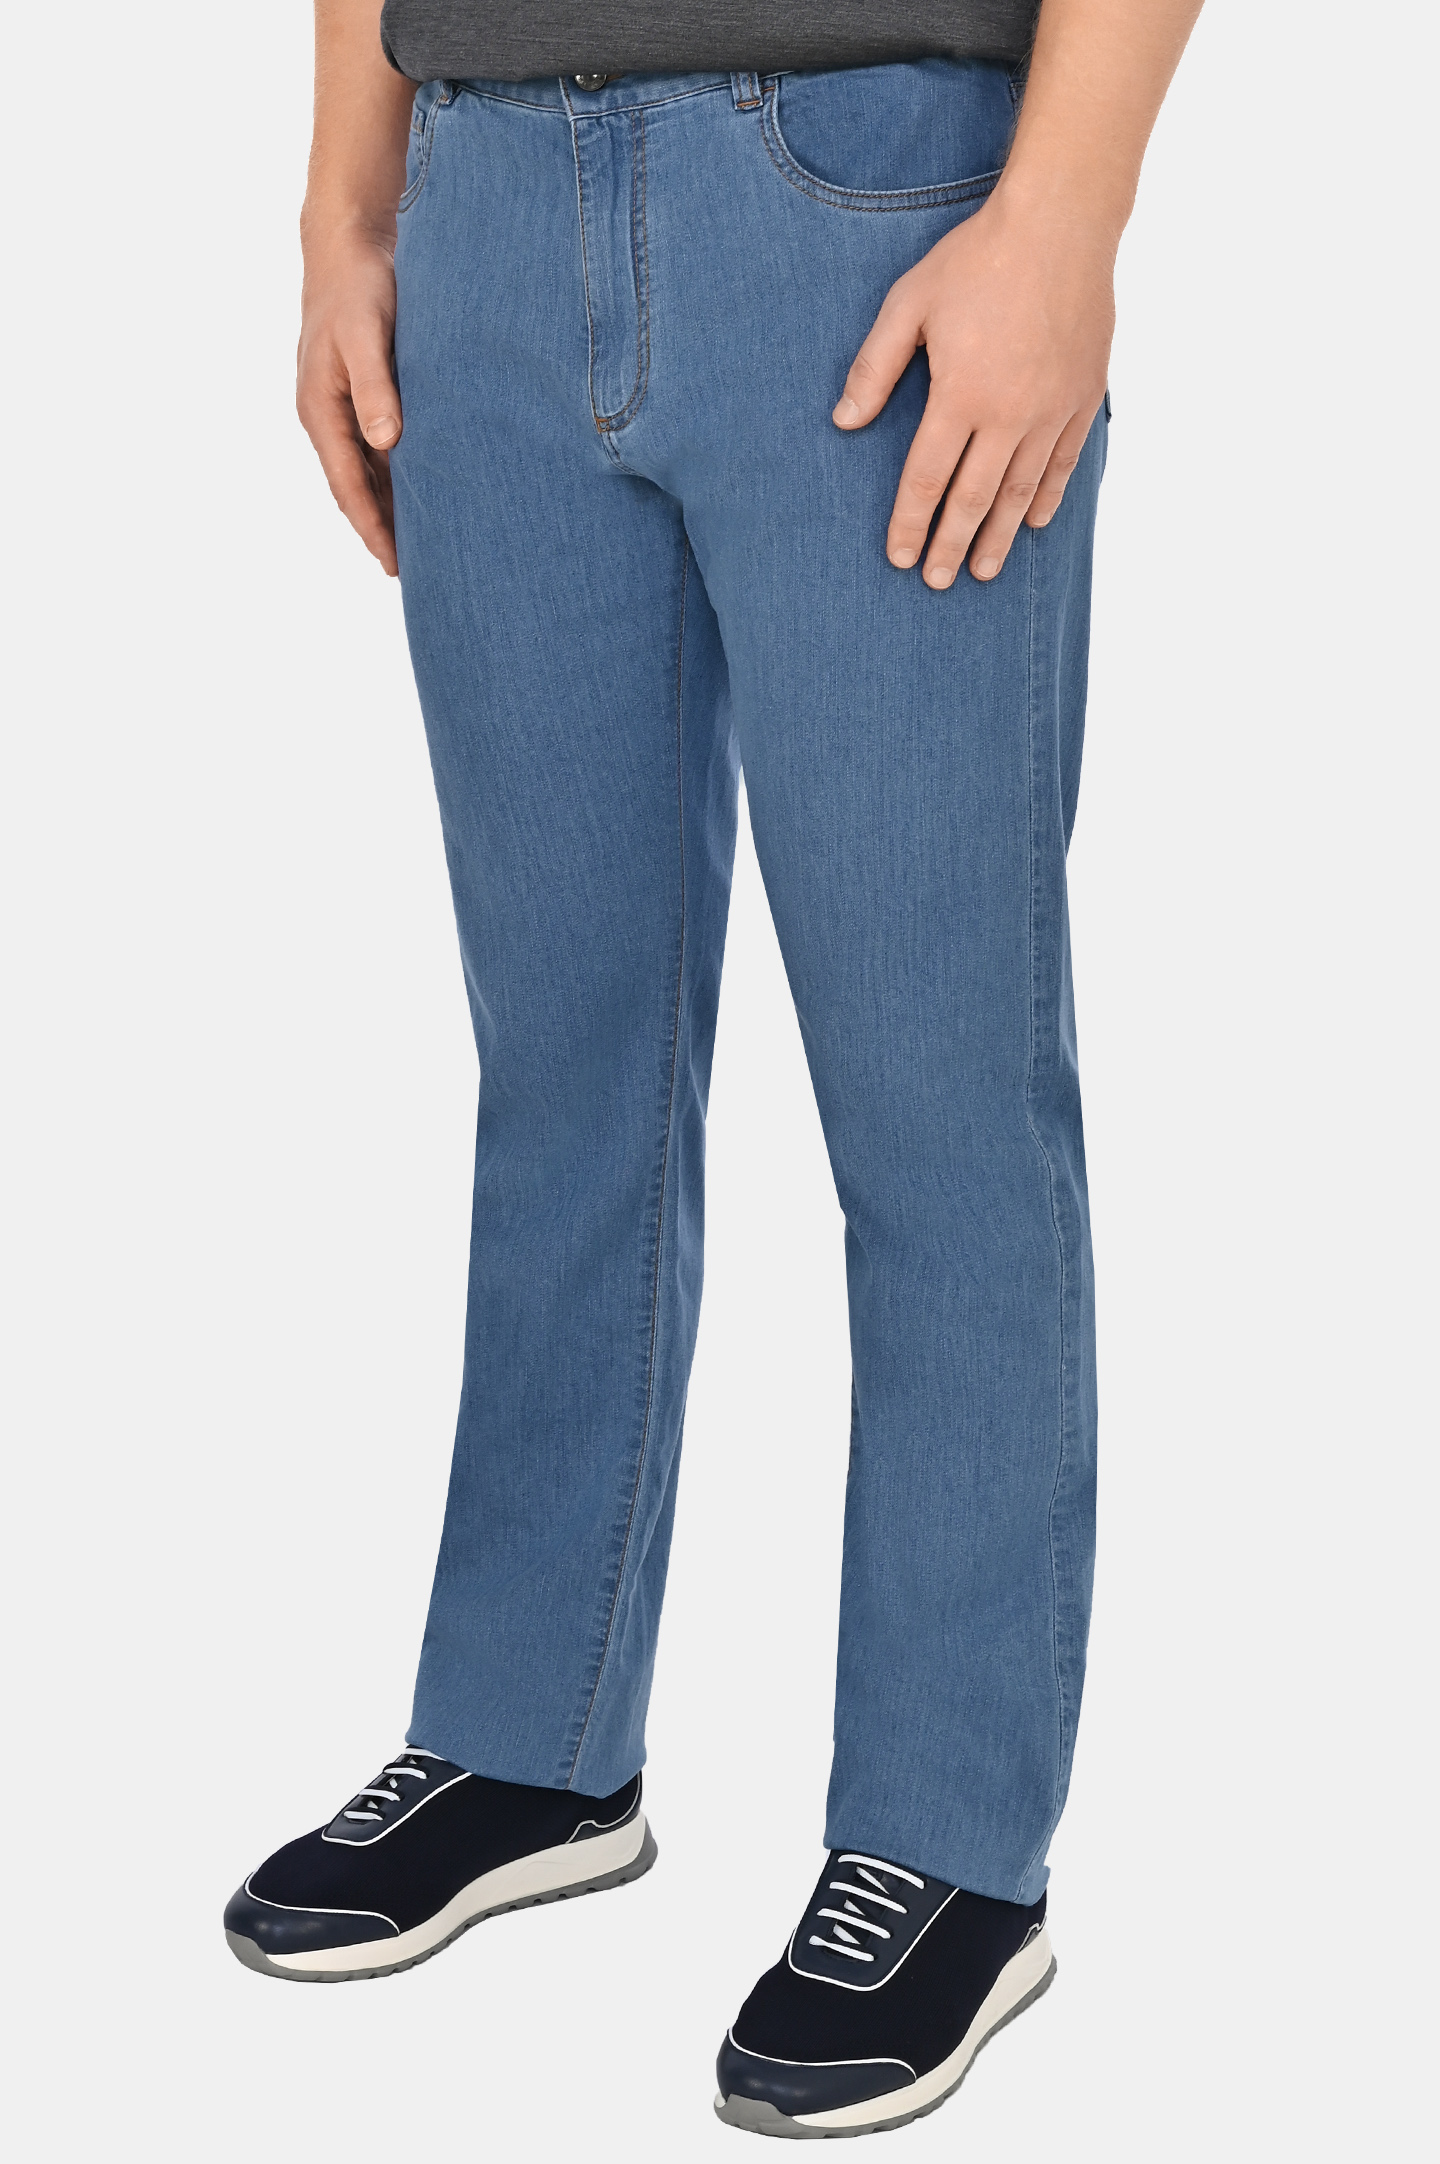 Прямые базовые джинсы CANALI PD00400 91700, цвет: Голубой, Мужской